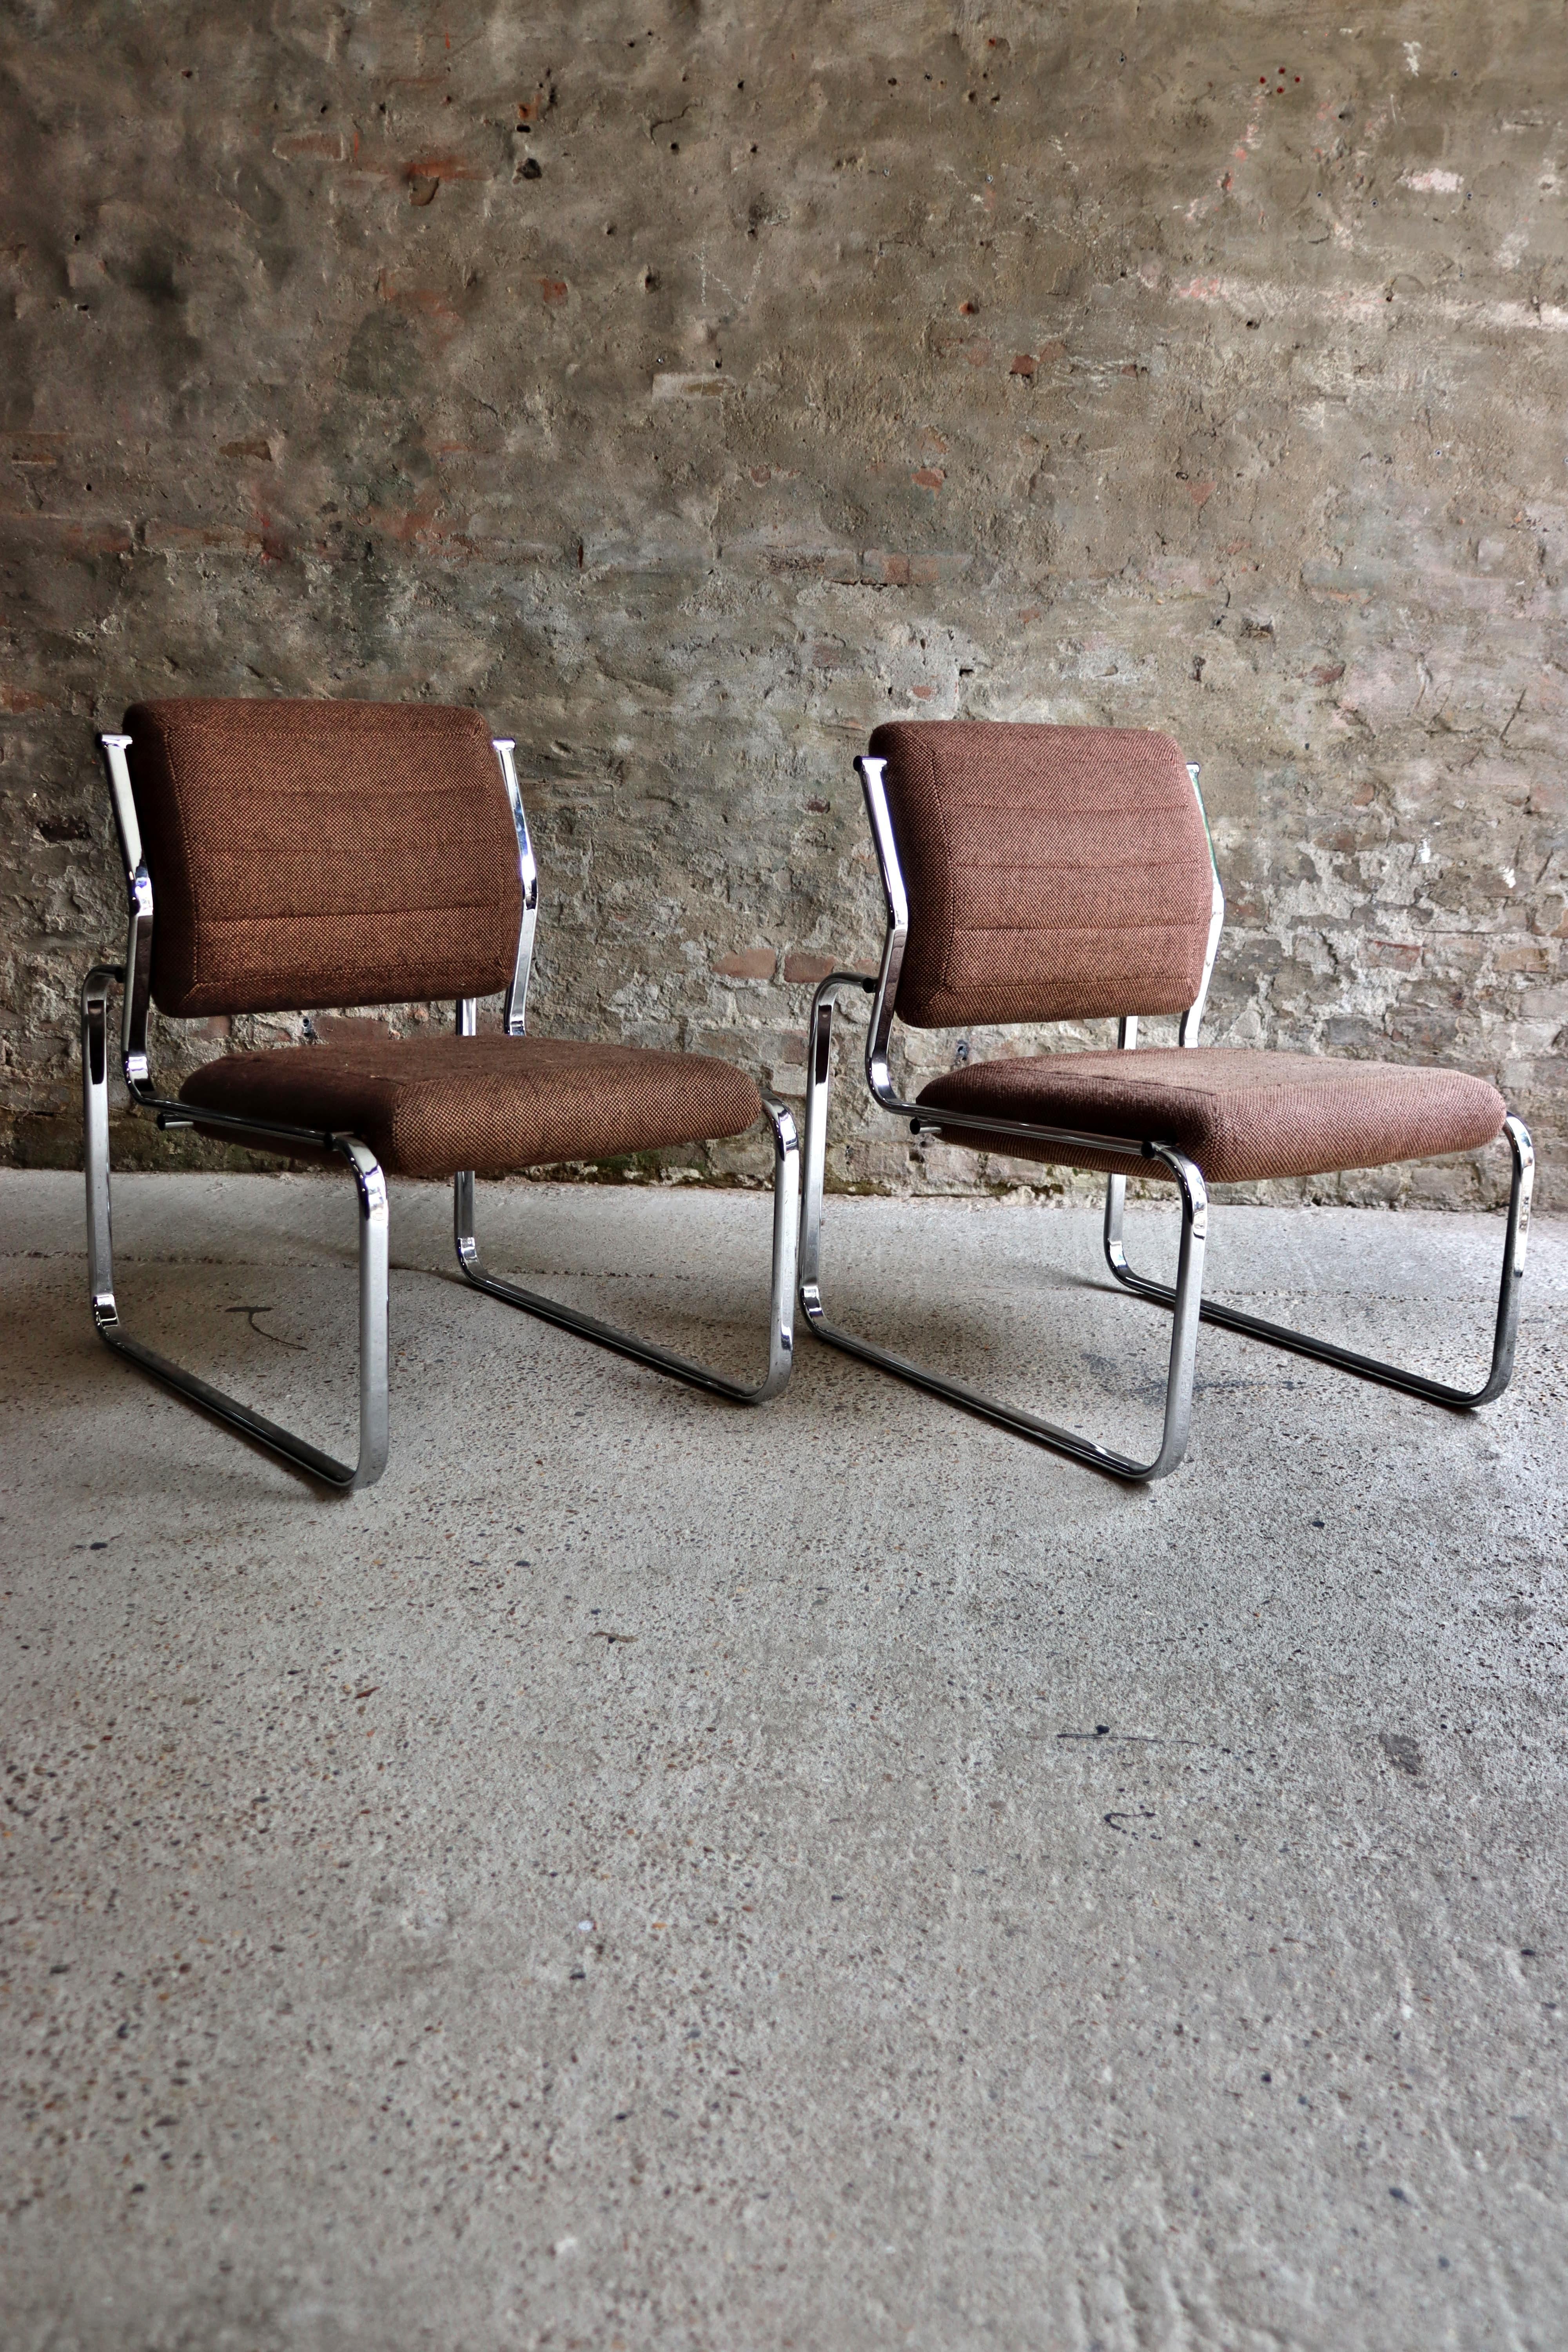 Ces chaises ont pris place dans une salle d'attente d'Air France dans les années 1970. Ils ont un air de Bauhaus et sont dotés d'une base chromée très spéciale, de coussins appropriés et d'un revêtement en tissu haut de gamme (légère décoloration).